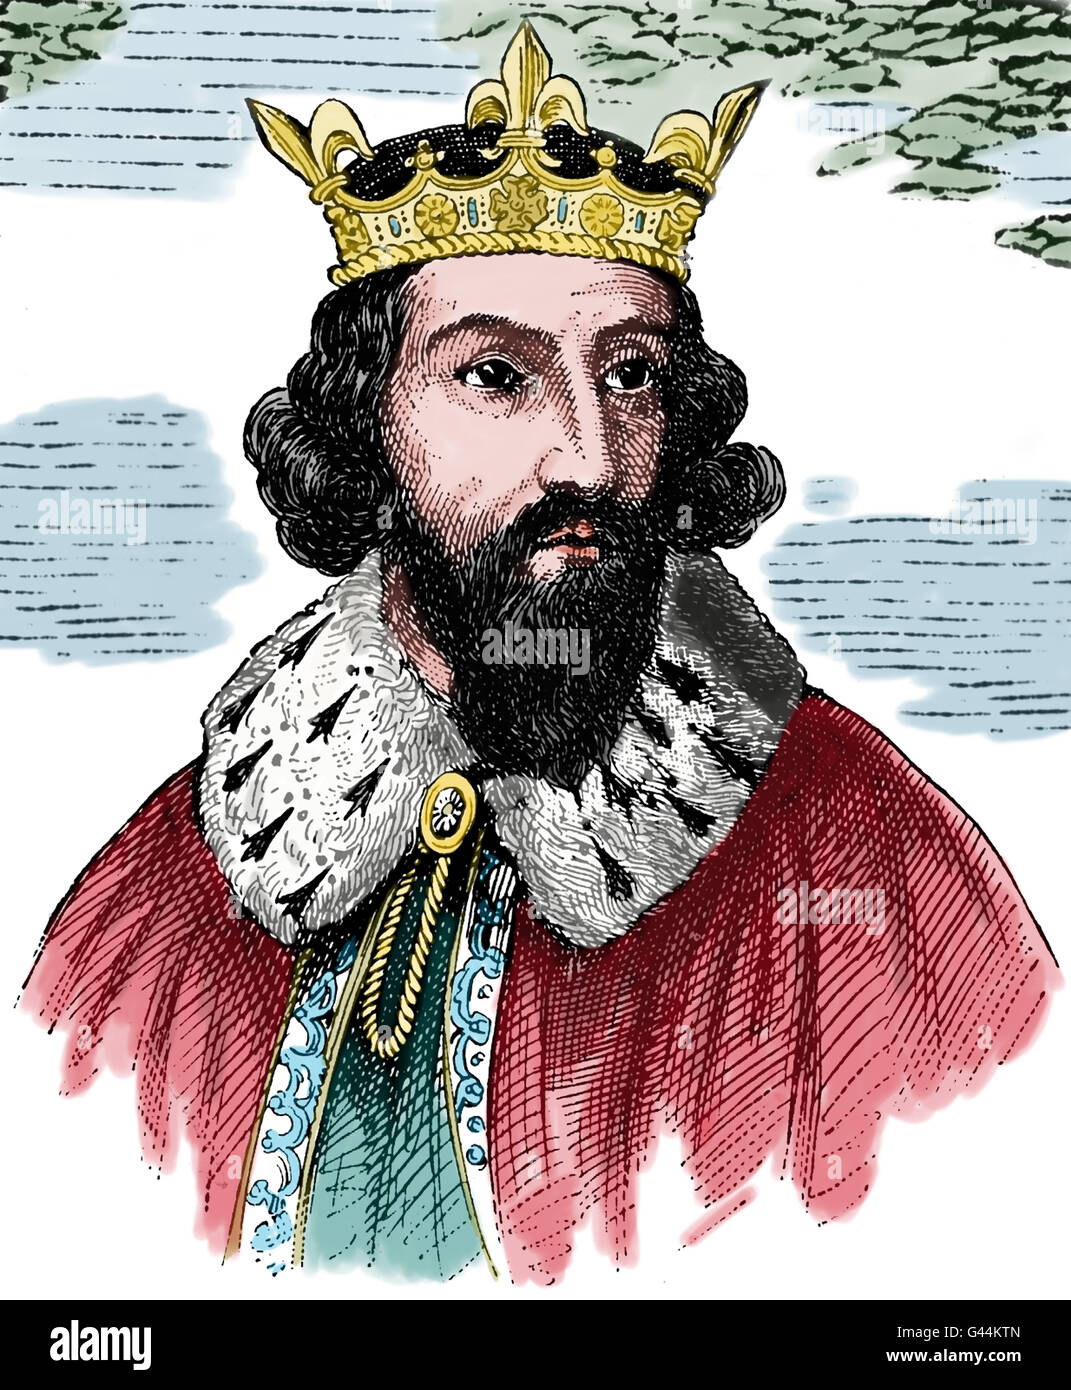 Alfred der große (849-899). König von Wessex von 871-899. Verteidigte sein Königreich gegen die Wikinger. Porträt. Gravur, 19. Jh. Stockfoto